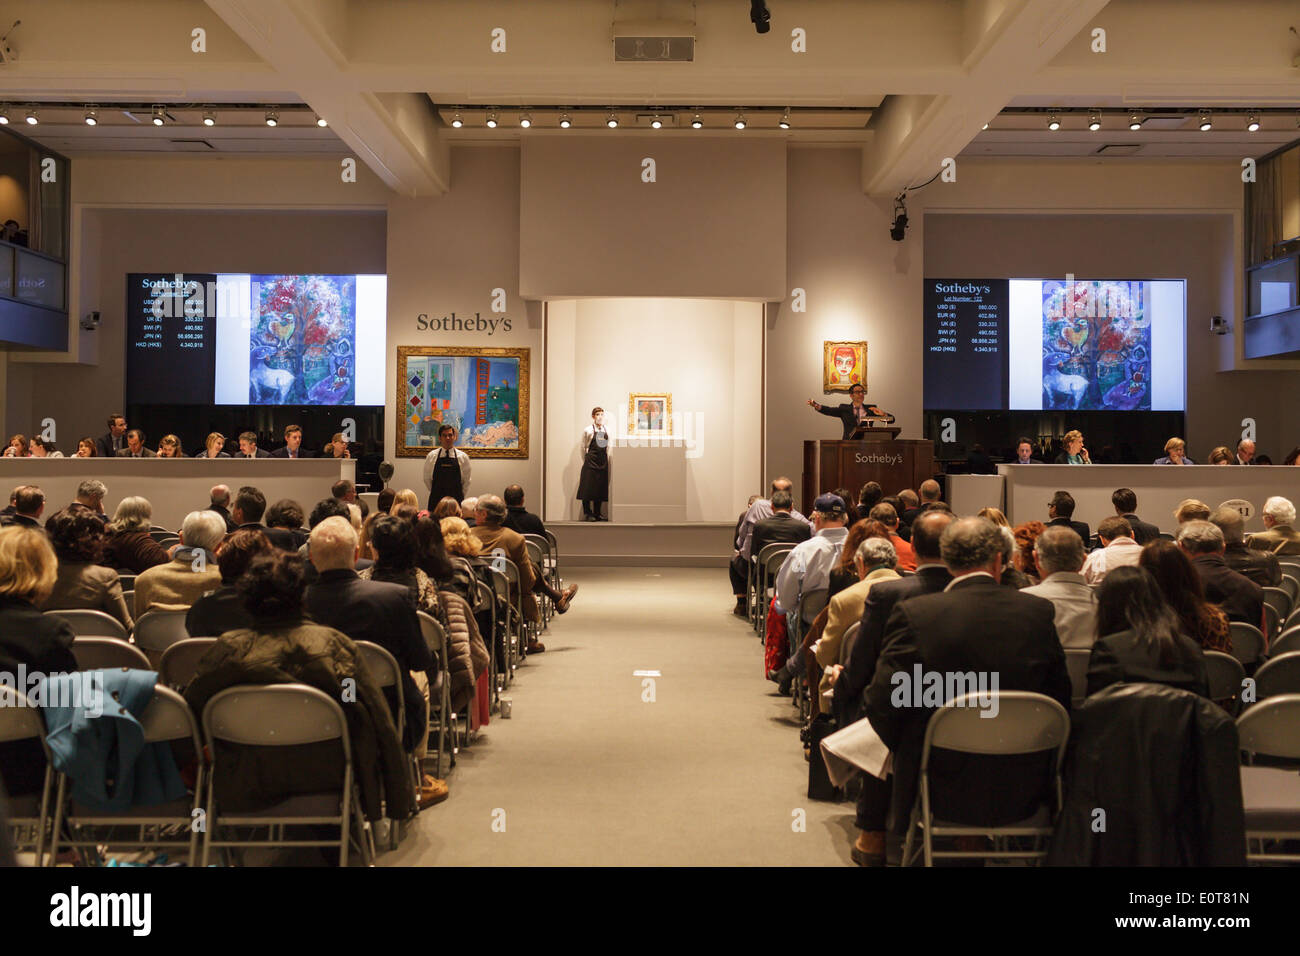 La licitación en curso sobre una pintura de Chagall, Sotheby's subasta de obras de arte, Nueva York, Nueva York, EE.UU. Foto de stock